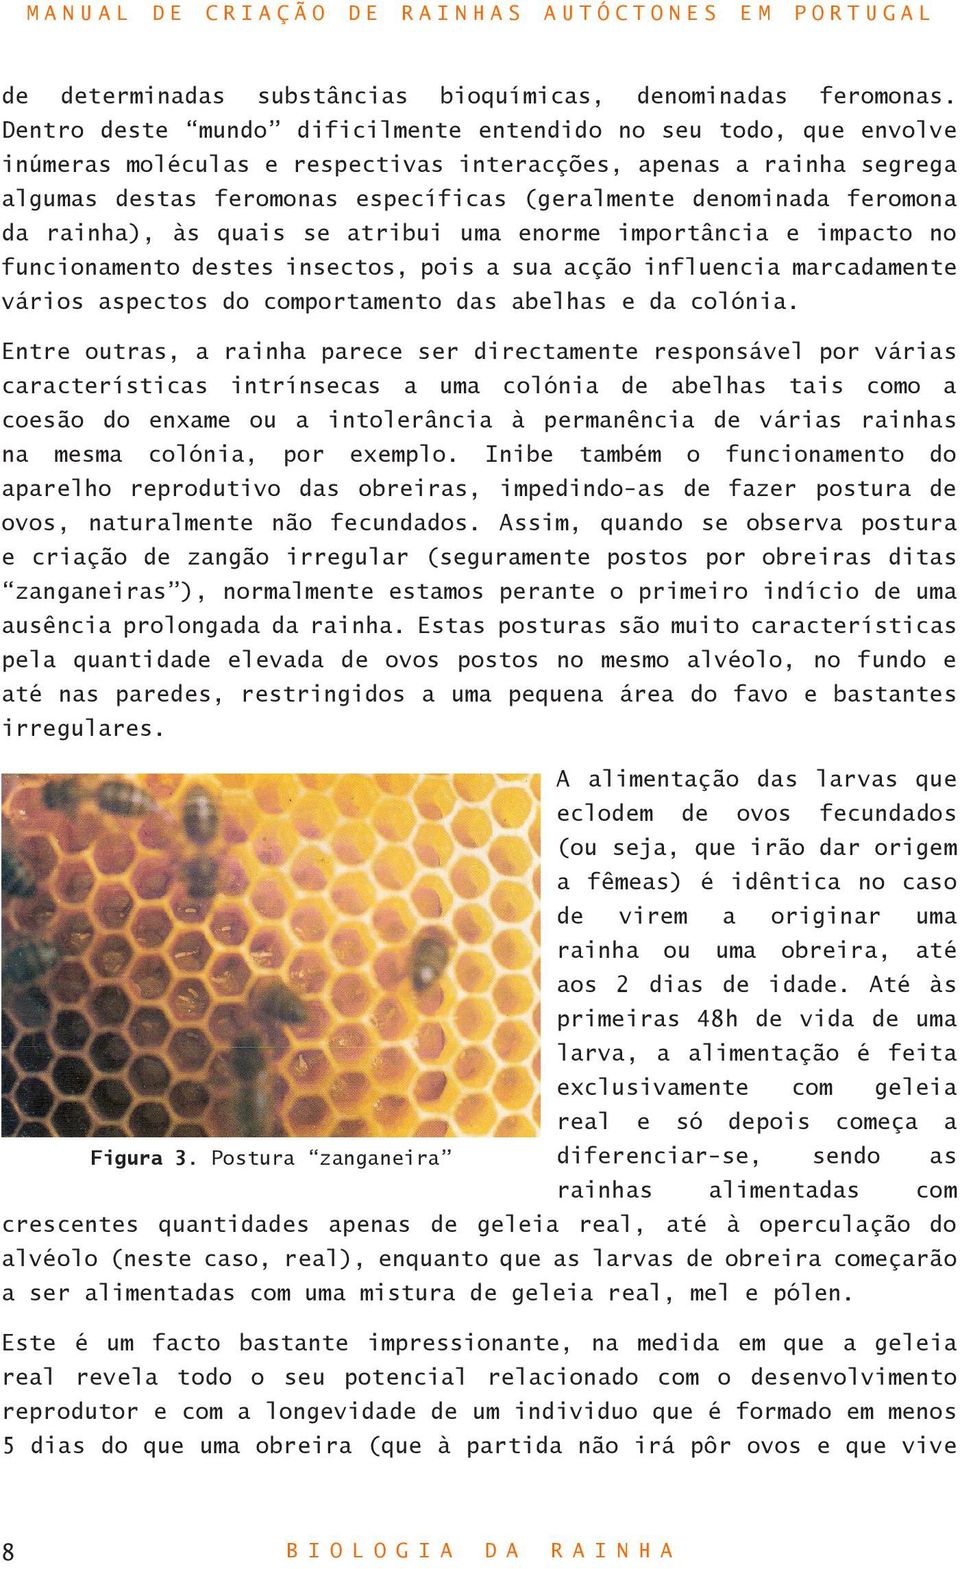 feromona da rainha), às quais se atribui uma enorme importância e impacto no funcionamento destes insectos, pois a sua acção influencia marcadamente vários aspectos do comportamento das abelhas e da